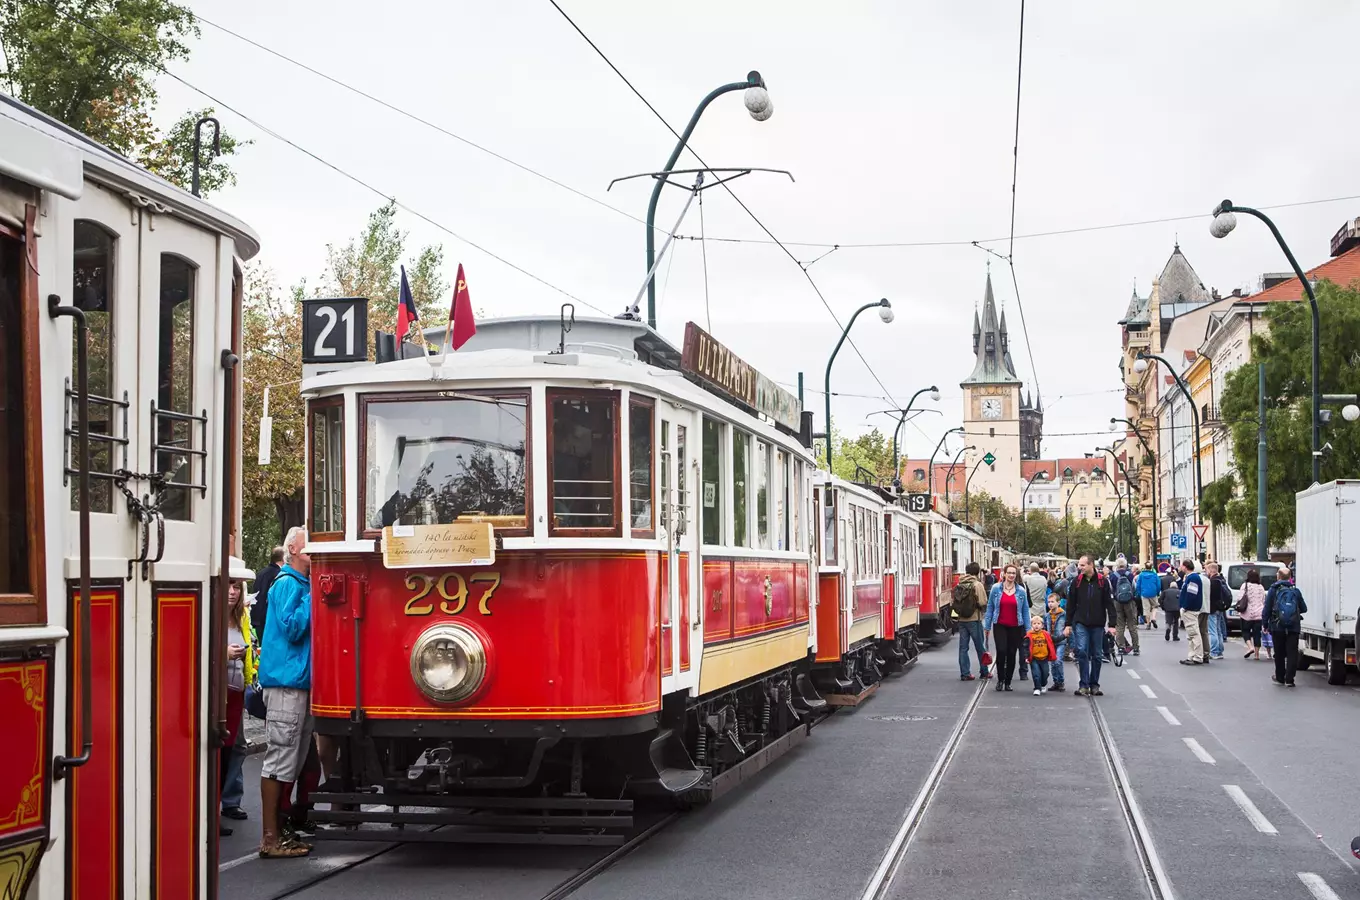 Průvod tramvají v Praze